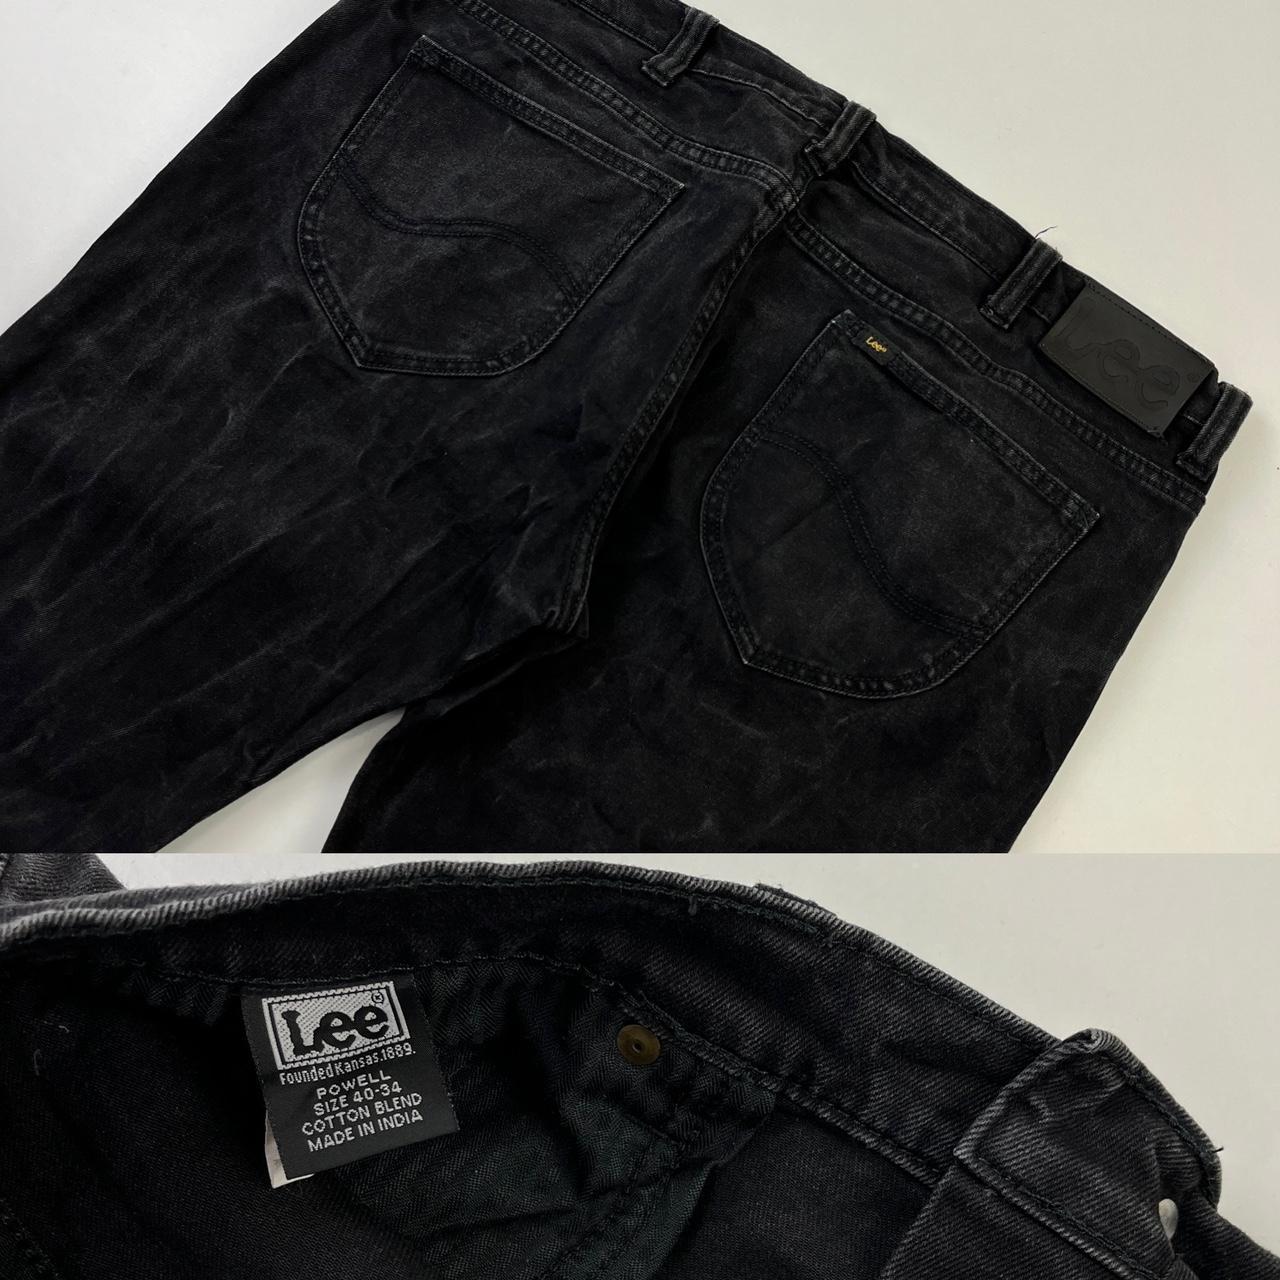 Vintage 90s Lee Washed Black Denim Jeans Size: W40... - Depop